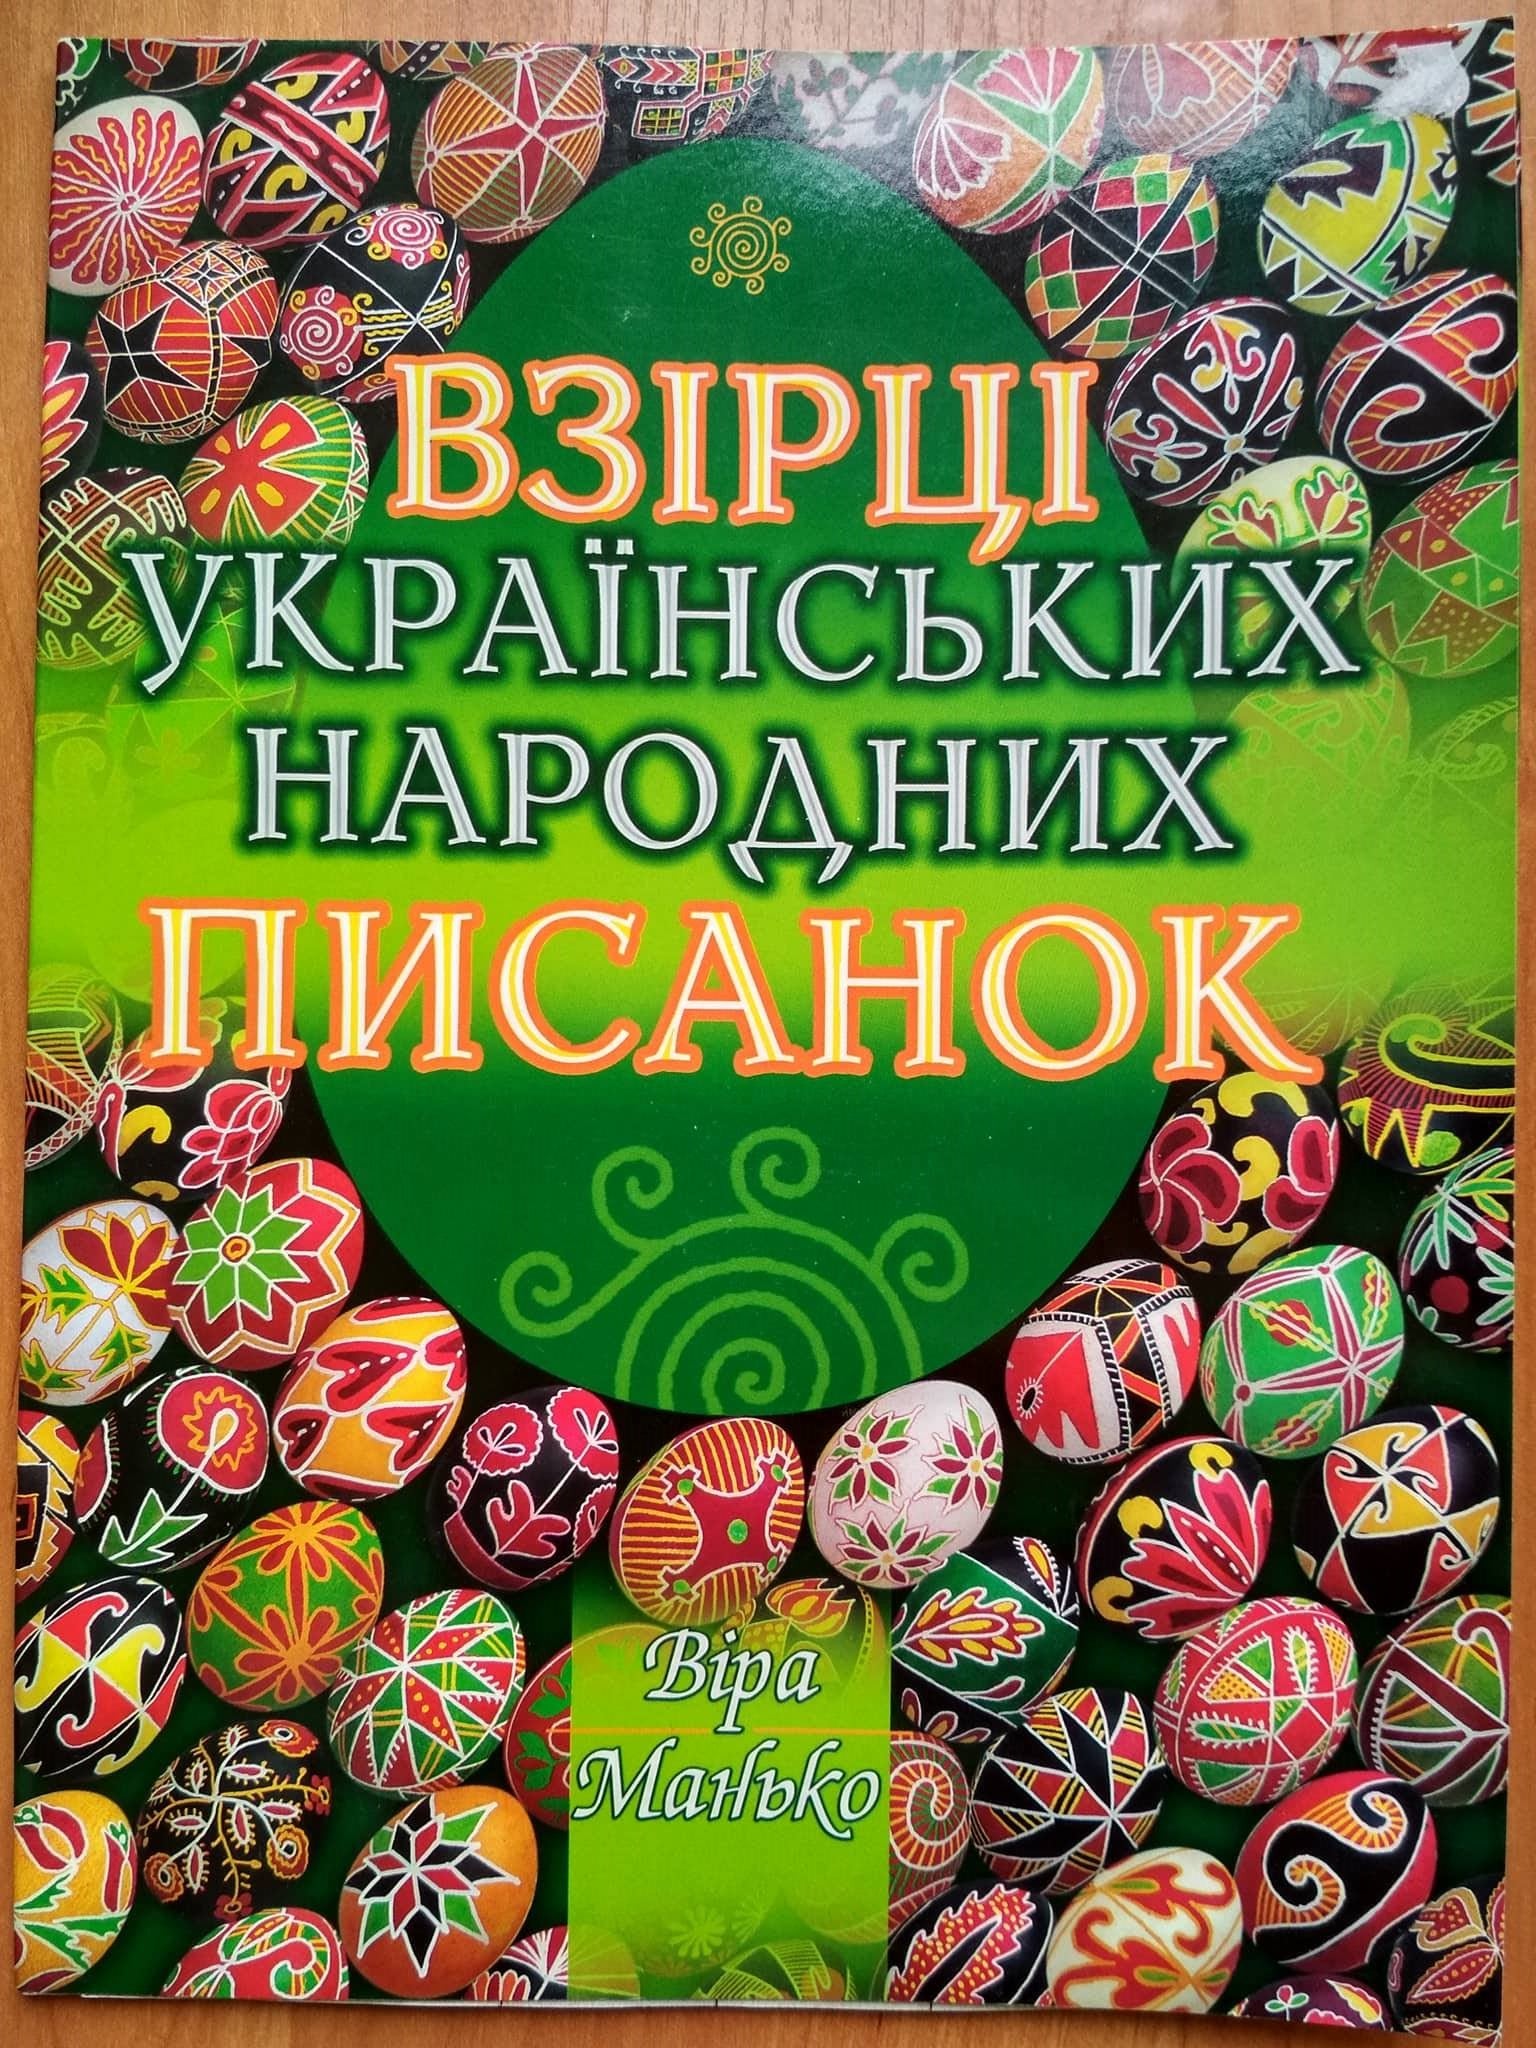 Samples of Ukrainian Easter eggs -  Vira Manko